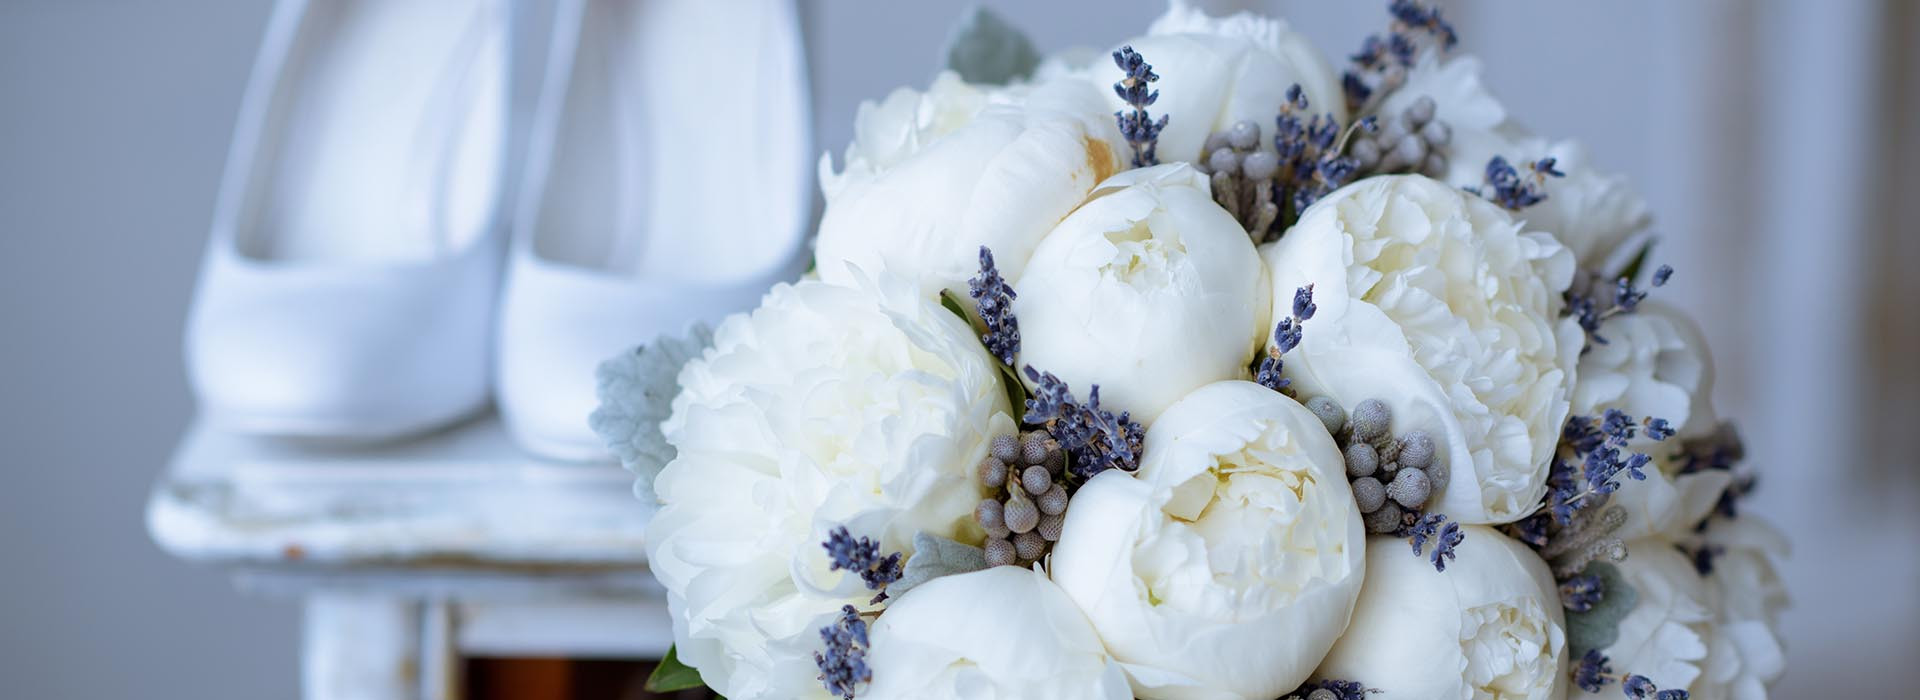 _0000_Shutterstock white flowers